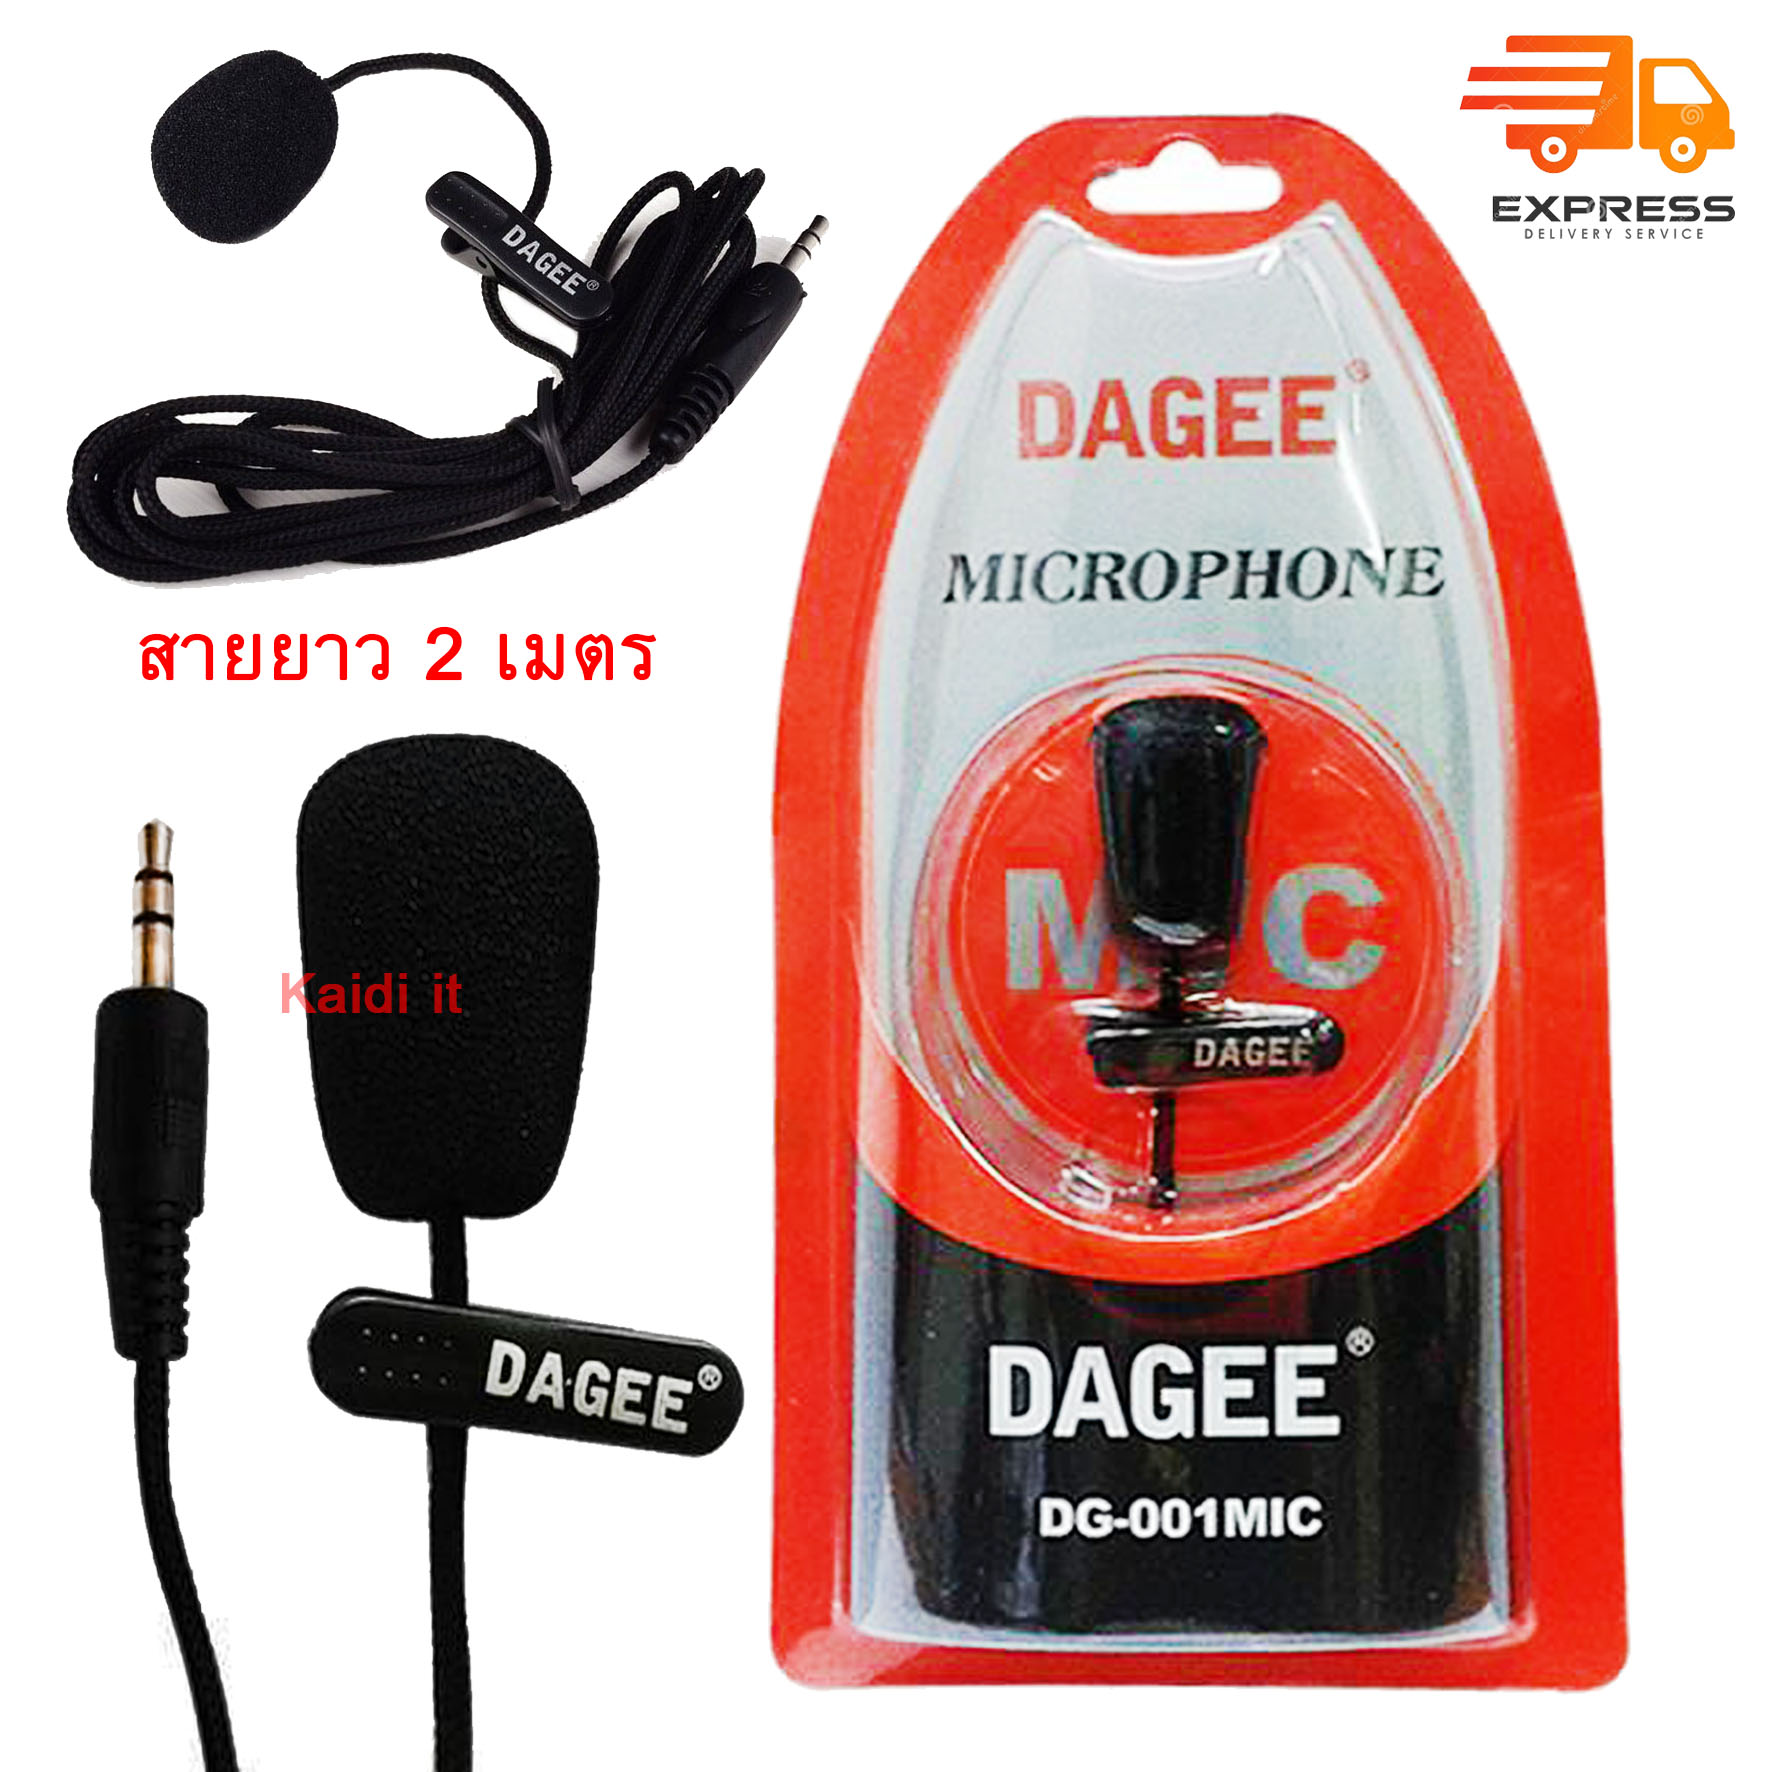 ไมค์หนีบปกเสื้อ DAGEE DG-001 Mini Clip-on Microphone (Black) (ใช้สำหรับอคอม และ มือถือ)